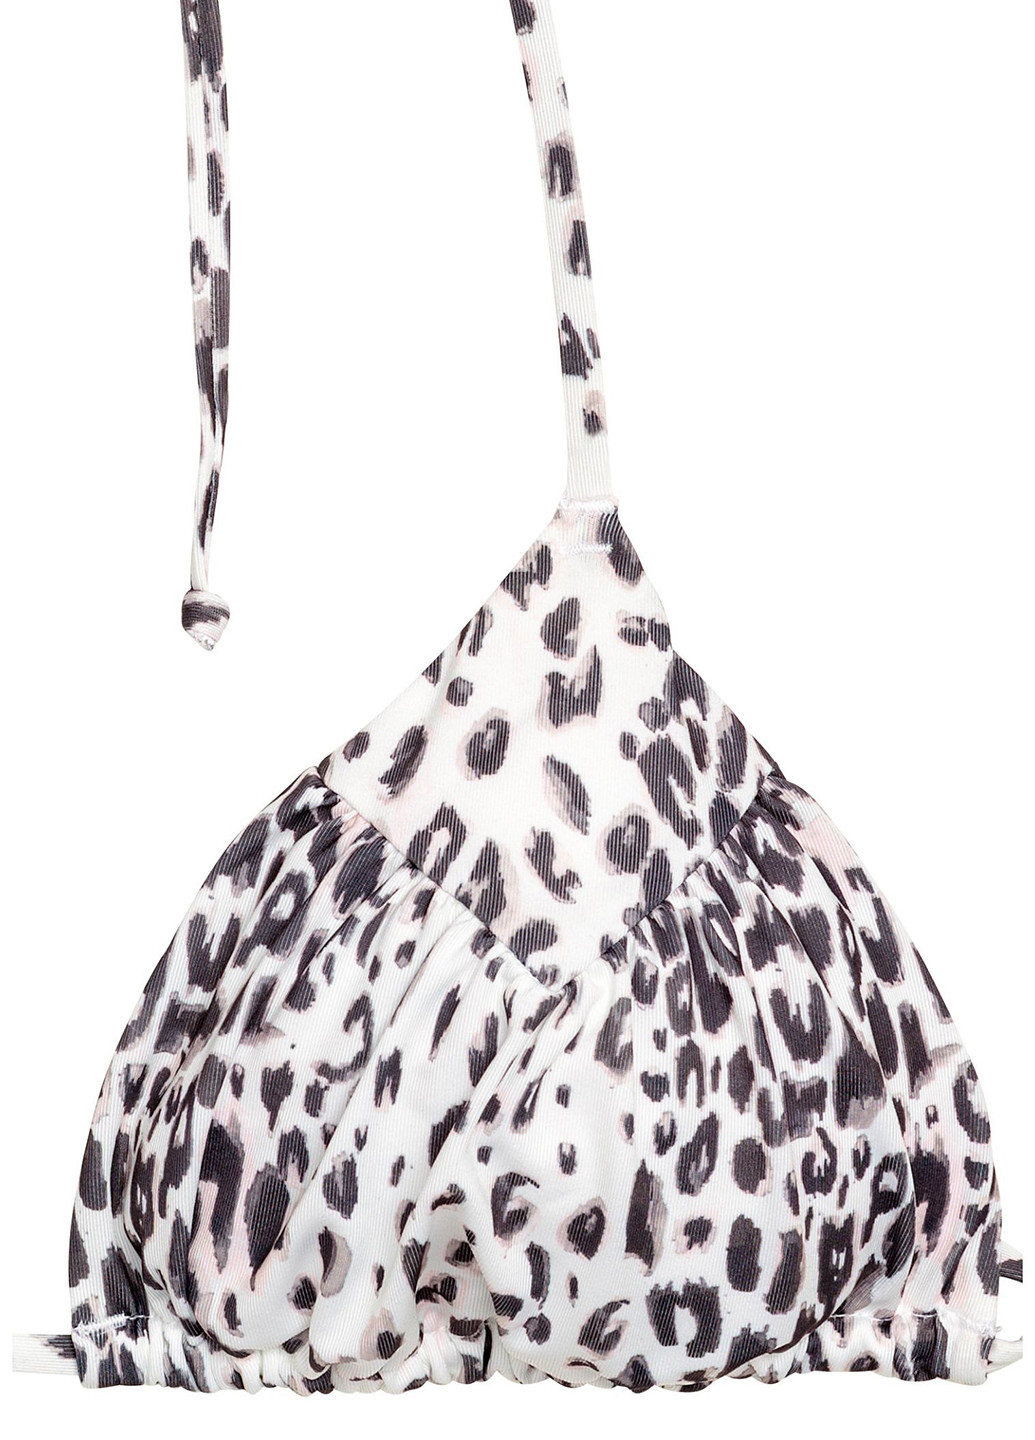 Купальний ліф H&M бікіні леопардовий чорно-білий пляжний поліестер